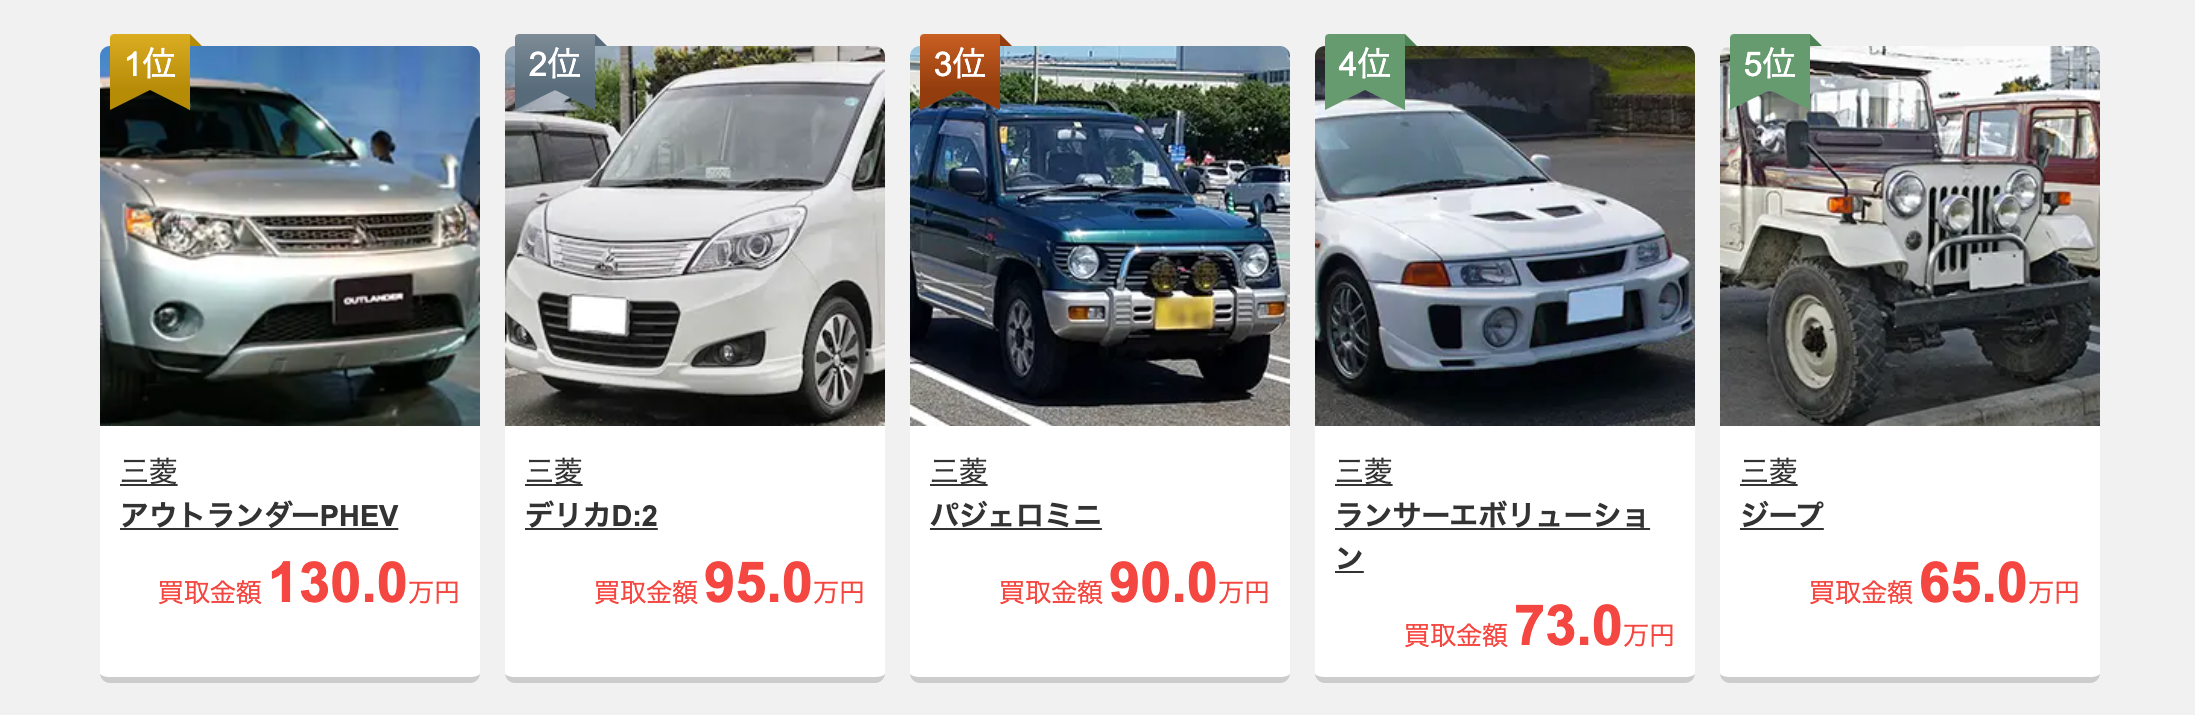 三菱車の高価買取ランキング